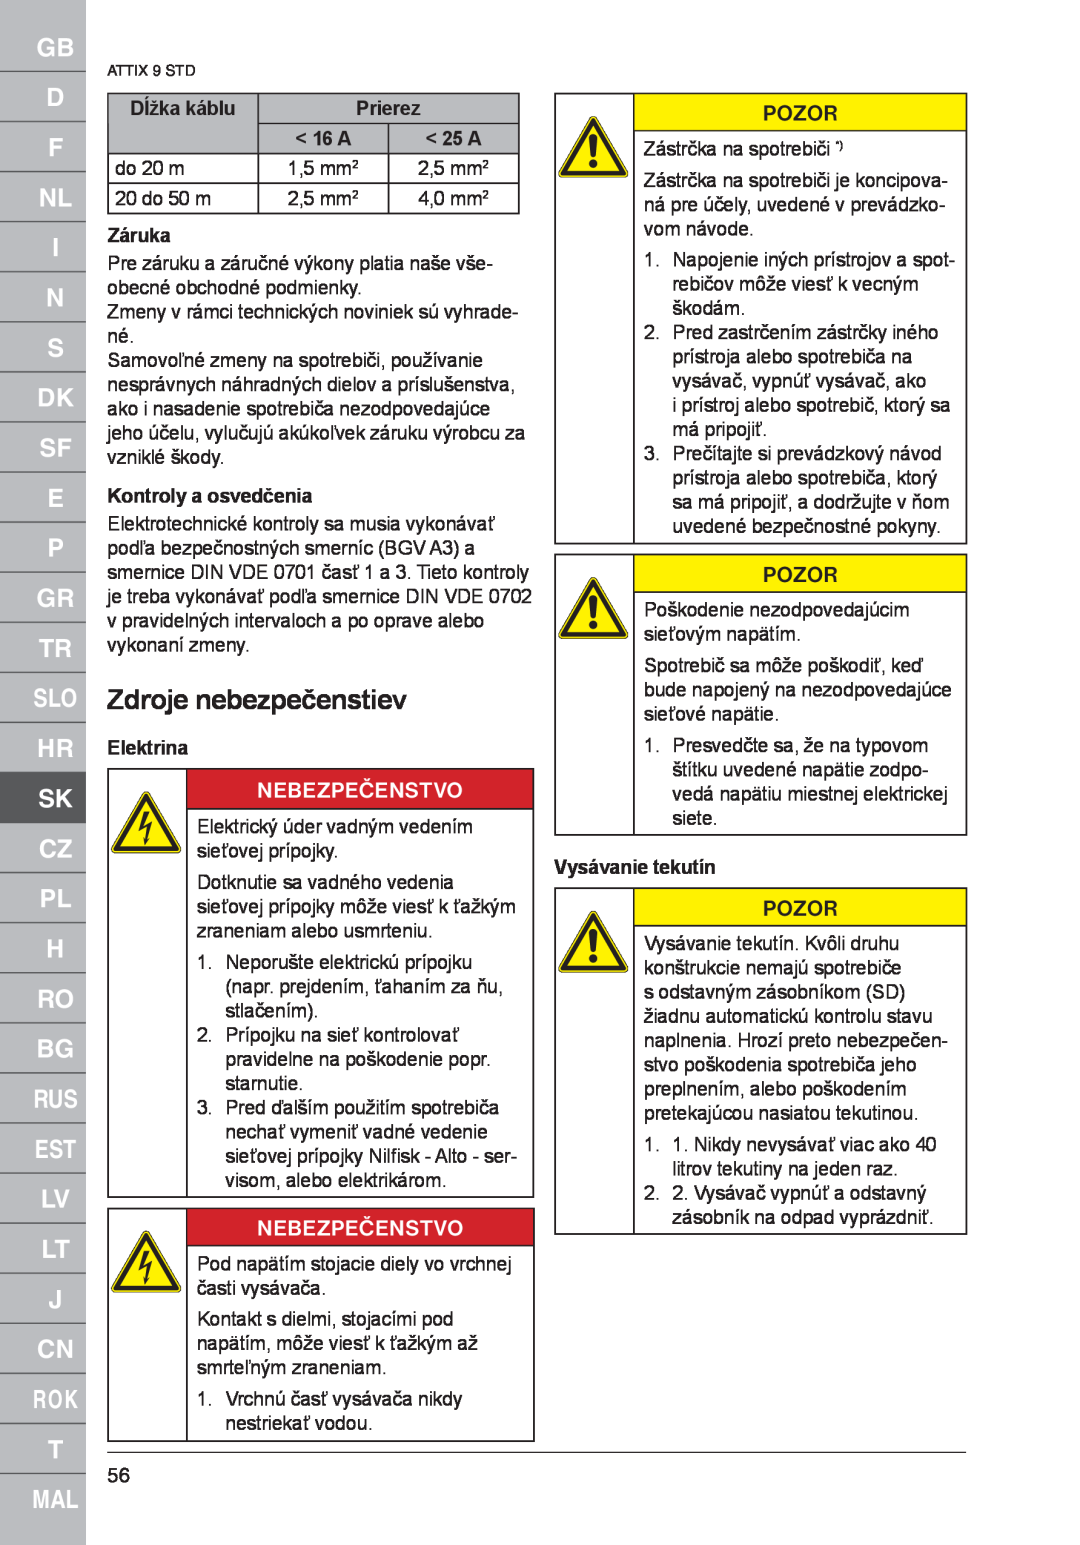 Nilfisk-ALTO 961-01 Zdroje nebezpečenstiev, Dĺžka káblu, Prierez, Záruka, Kontroly a osvedčenia, Elektrina, Nebezpečenstvo 